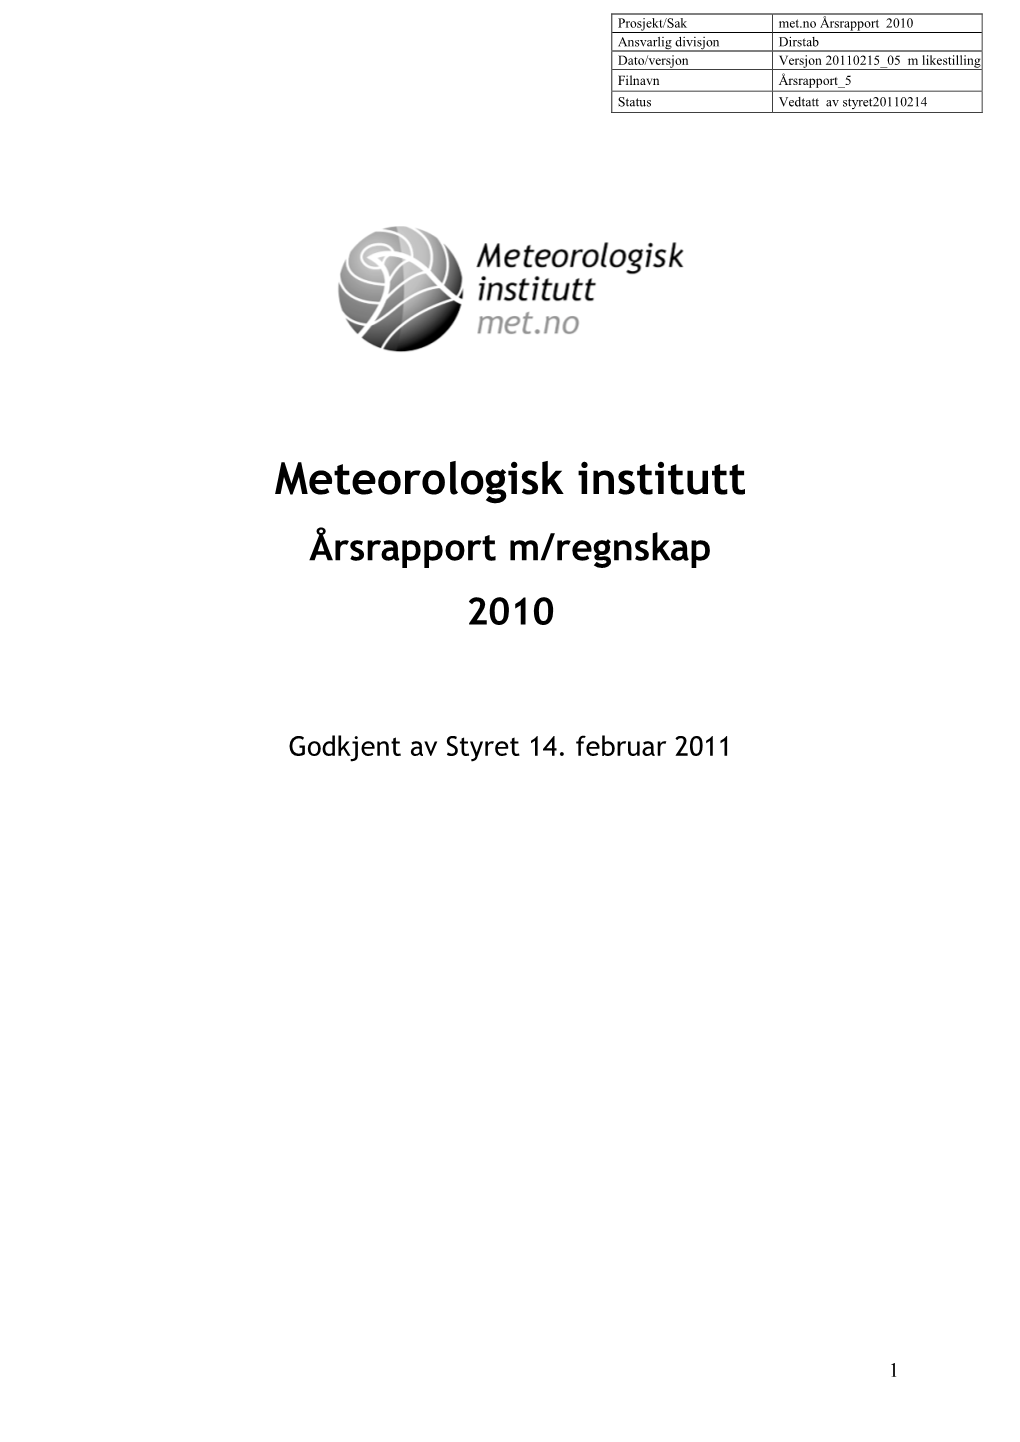 Meteorologisk Institutt Årsrapport M/Regnskap 2010